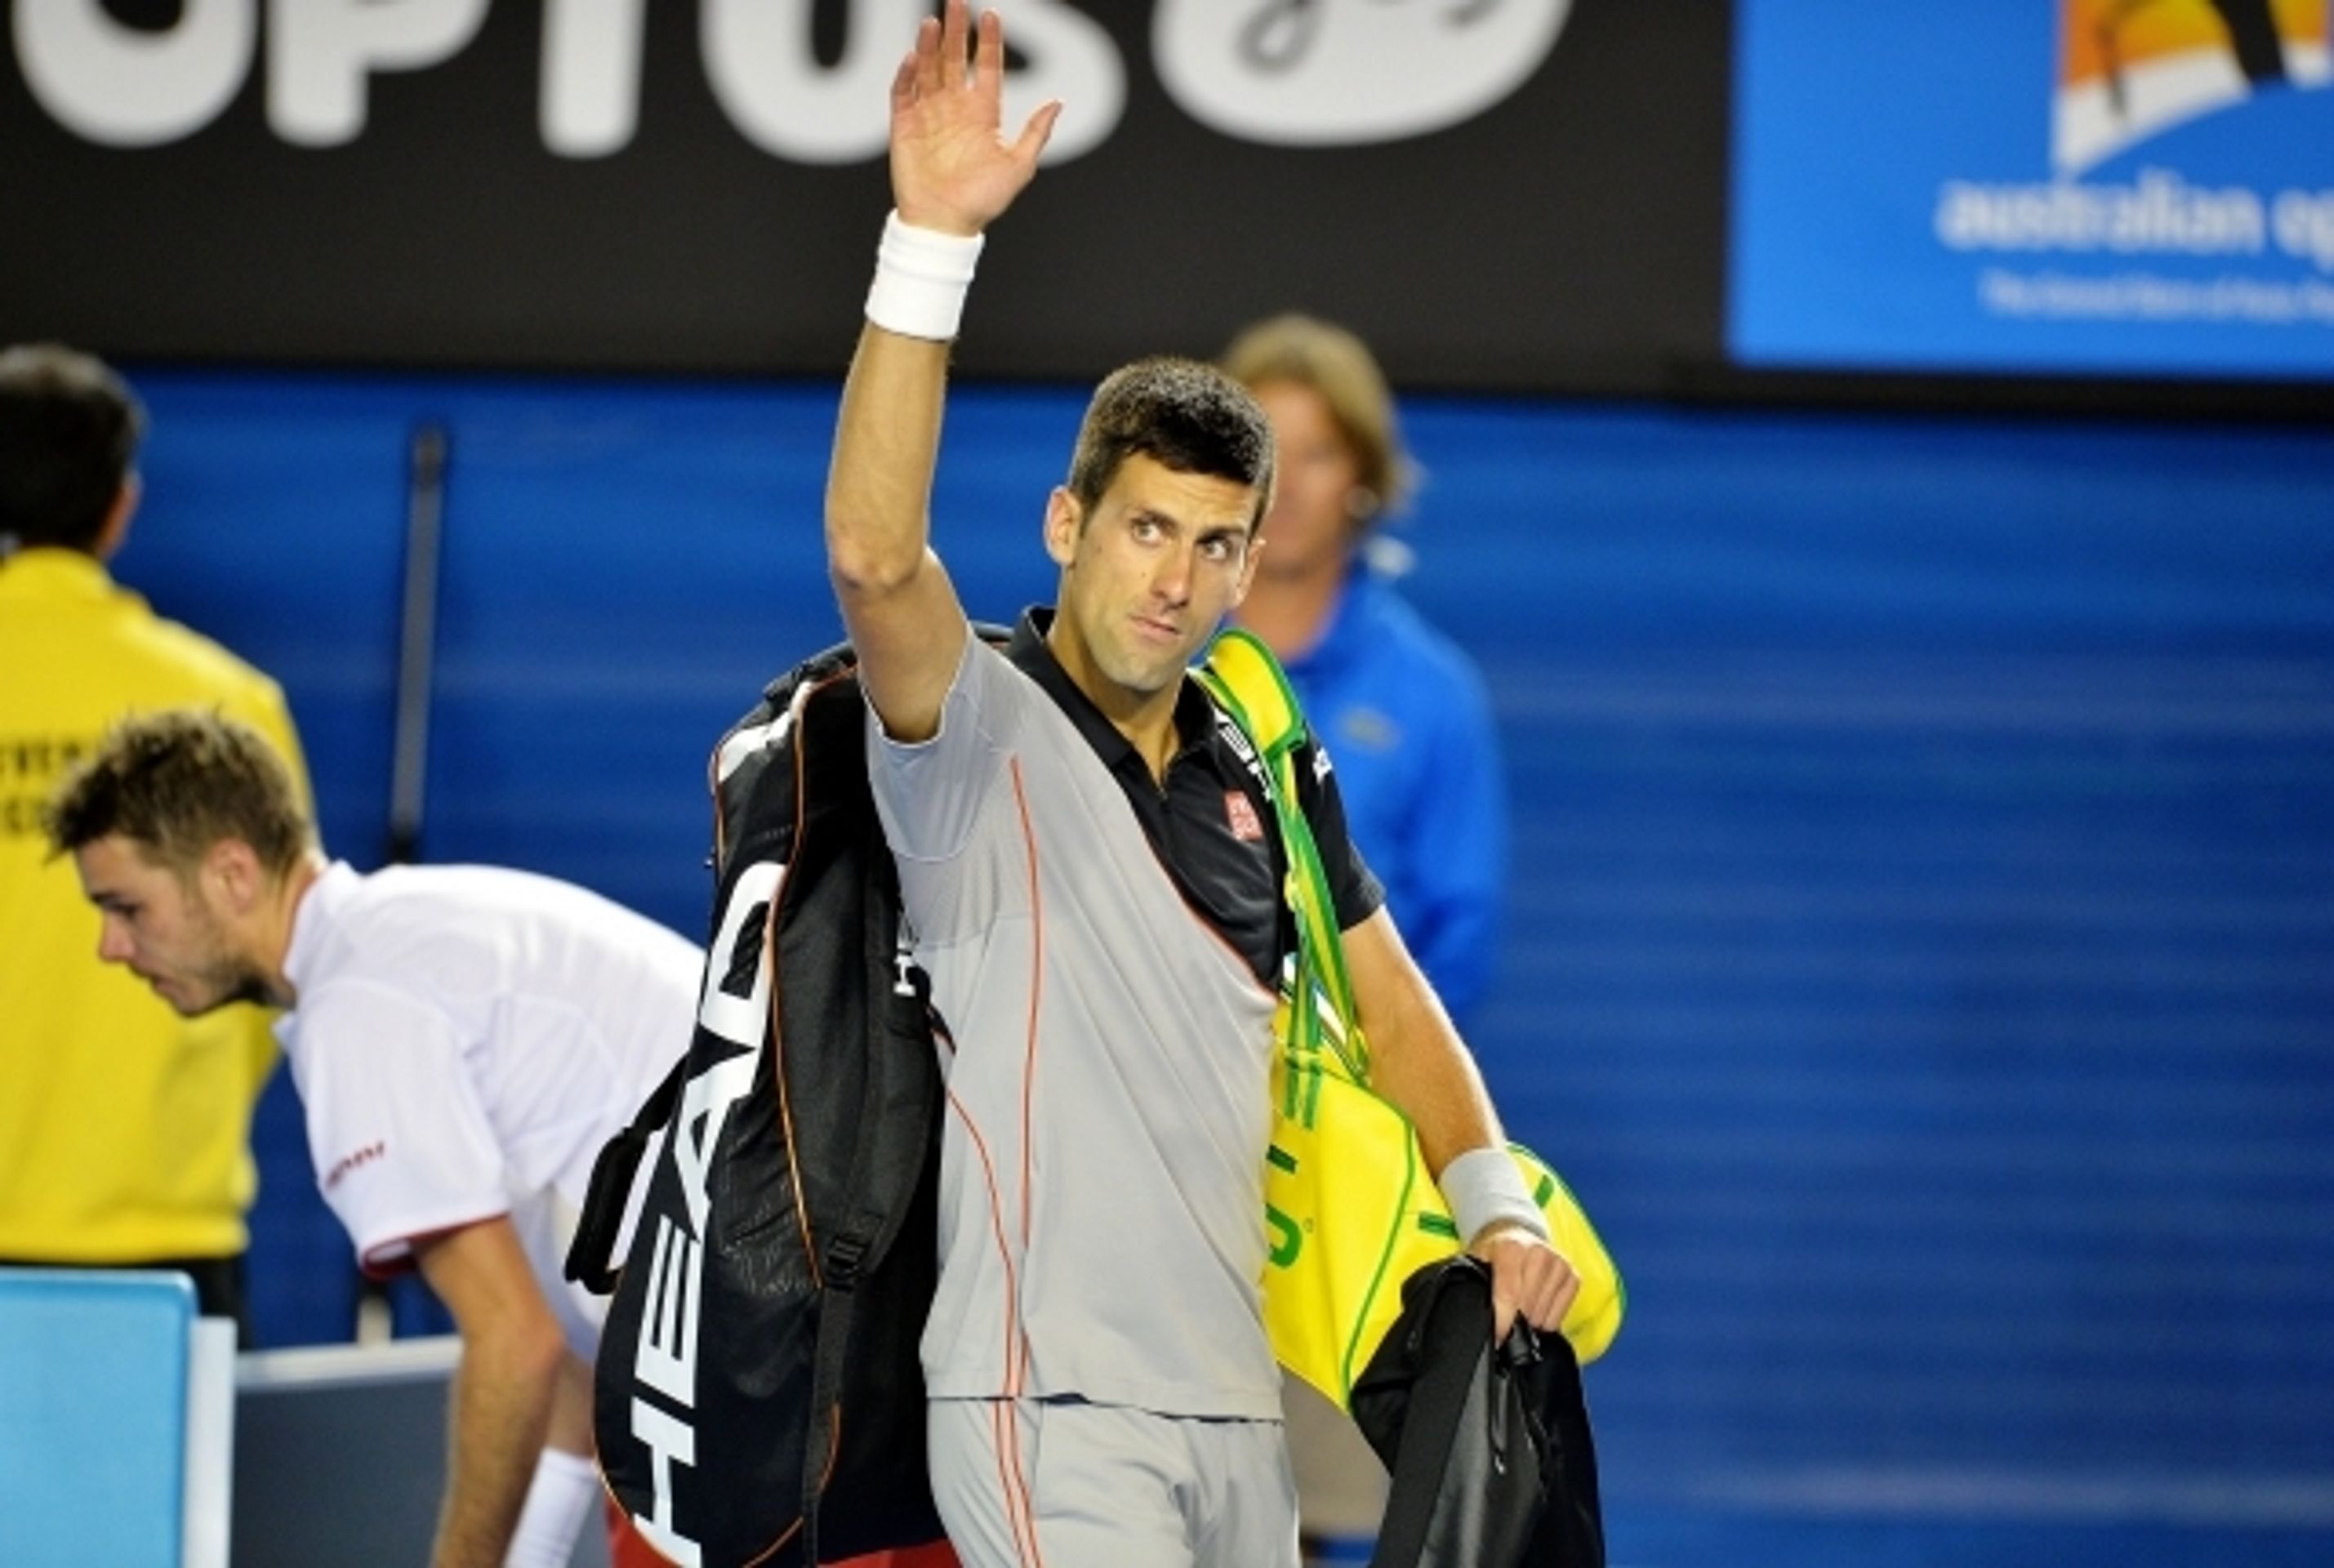 Stanislas Wawrinka porazil na Australian Open Novaka Djokoviče - 3 - GALERIE: Stanislas Wawrinka porazil na Australian Open Novaka Djokoviče (9/13)